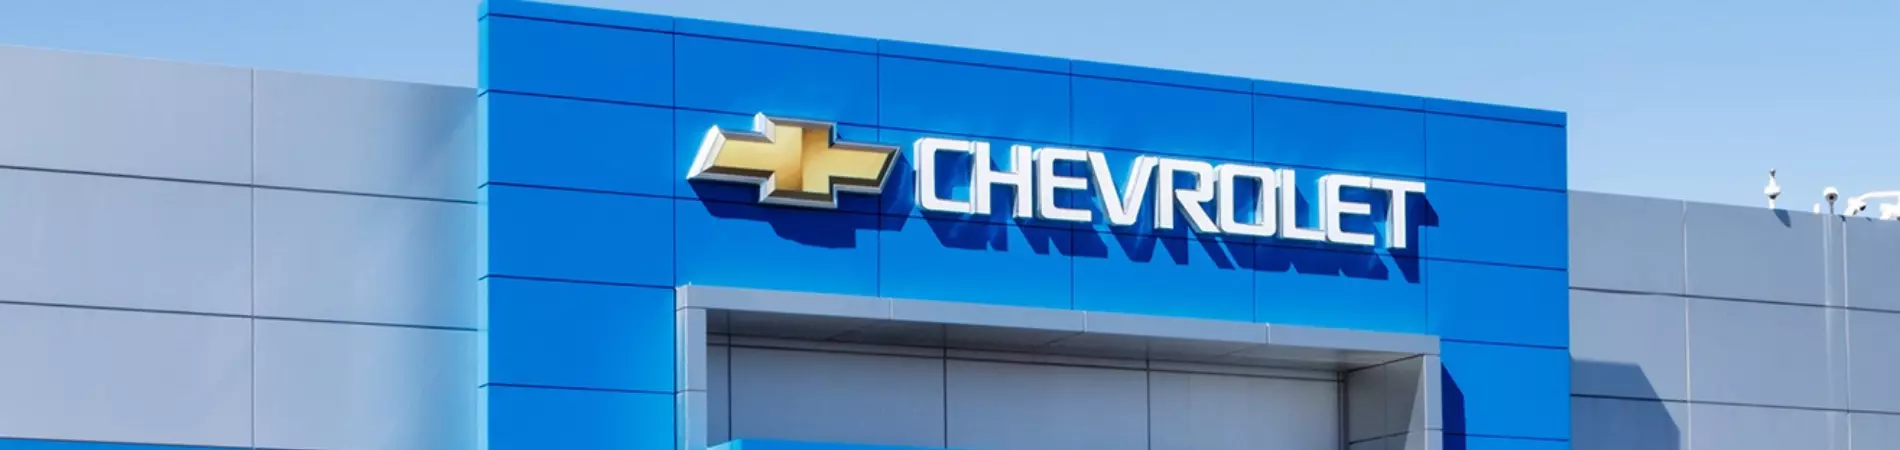 Venda e ofertas de carros novos e seminovos na concessionária Chevrolet Automec Castelinho. Peças genuínas GM, acessórios automotivos originais e serviços de manutenção e revisão de veículos.